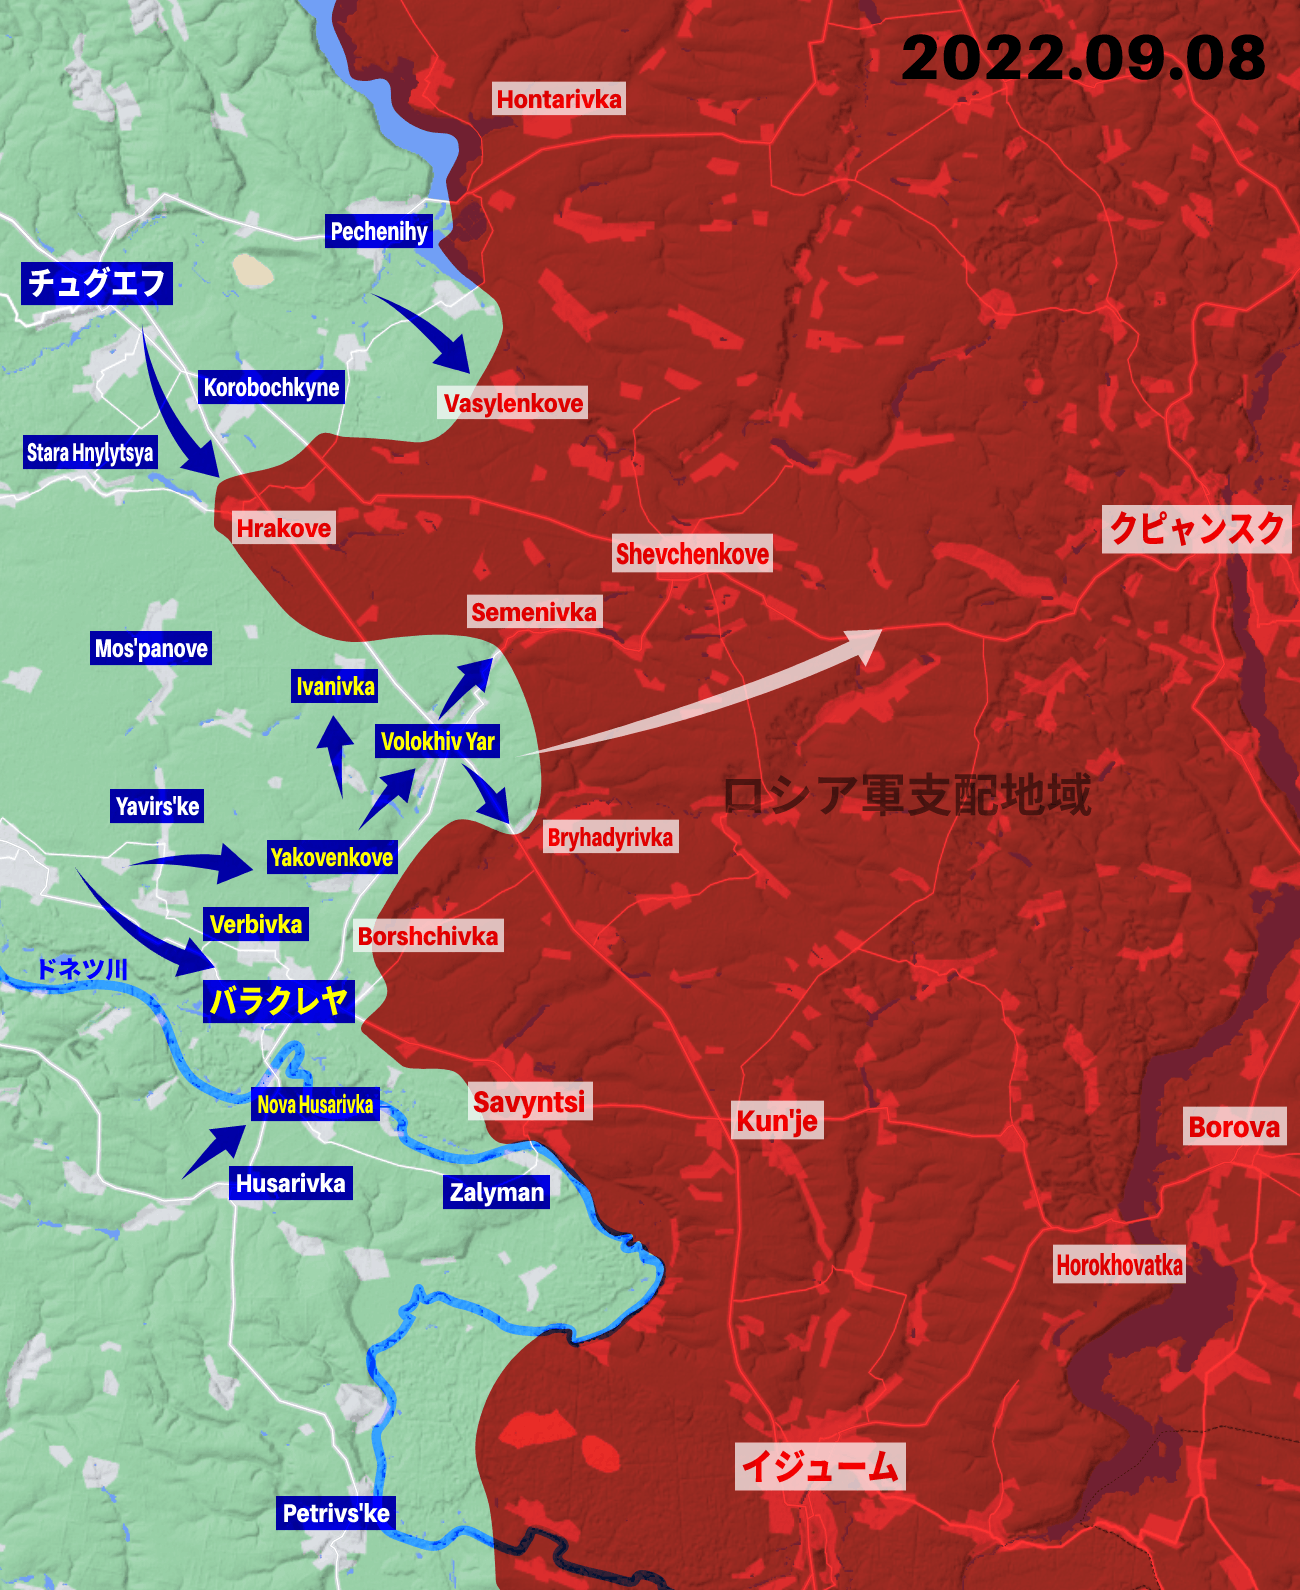 ウクライナ軍はハルキウ州で50km以上前進、700km²以上の領土奪回